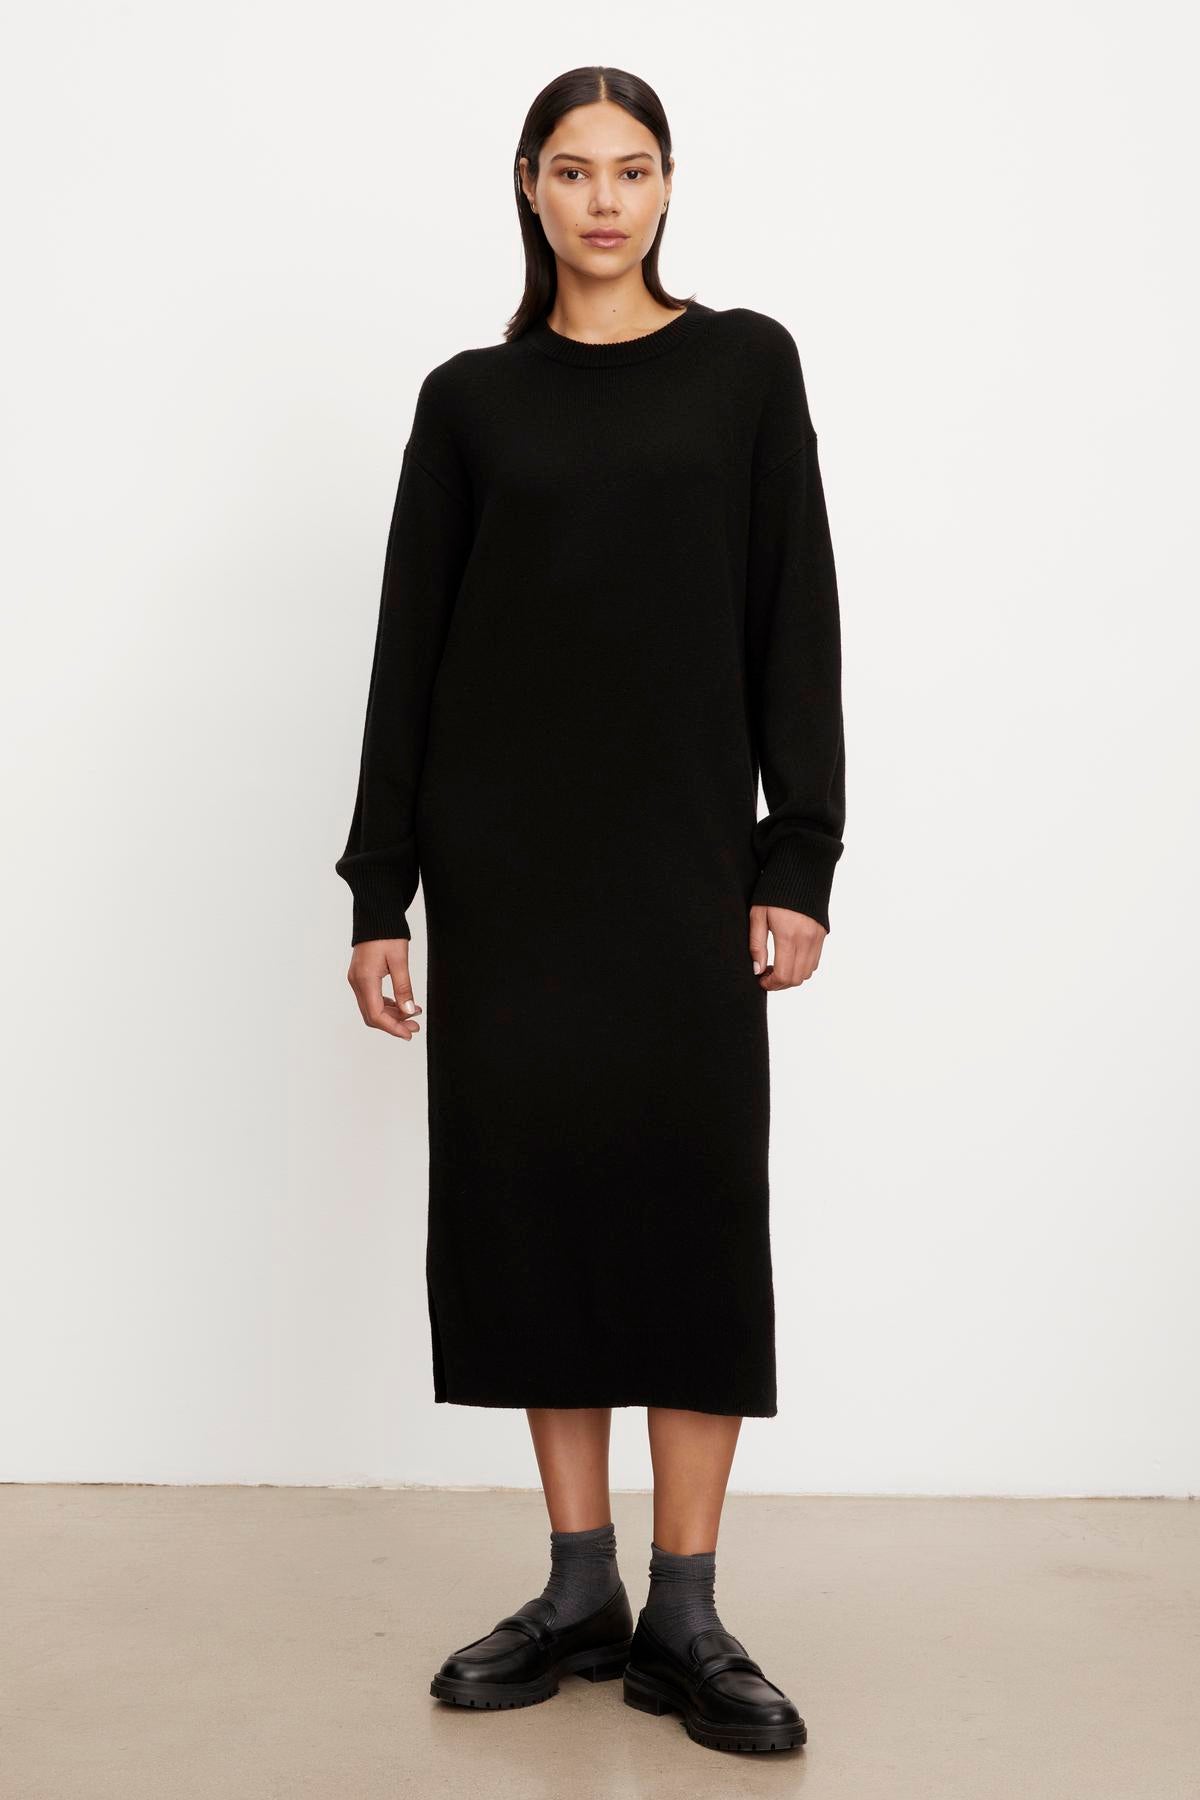   The model is wearing a cozy Velvet by Graham & Spencer KADEN SWEATER DRESS. 